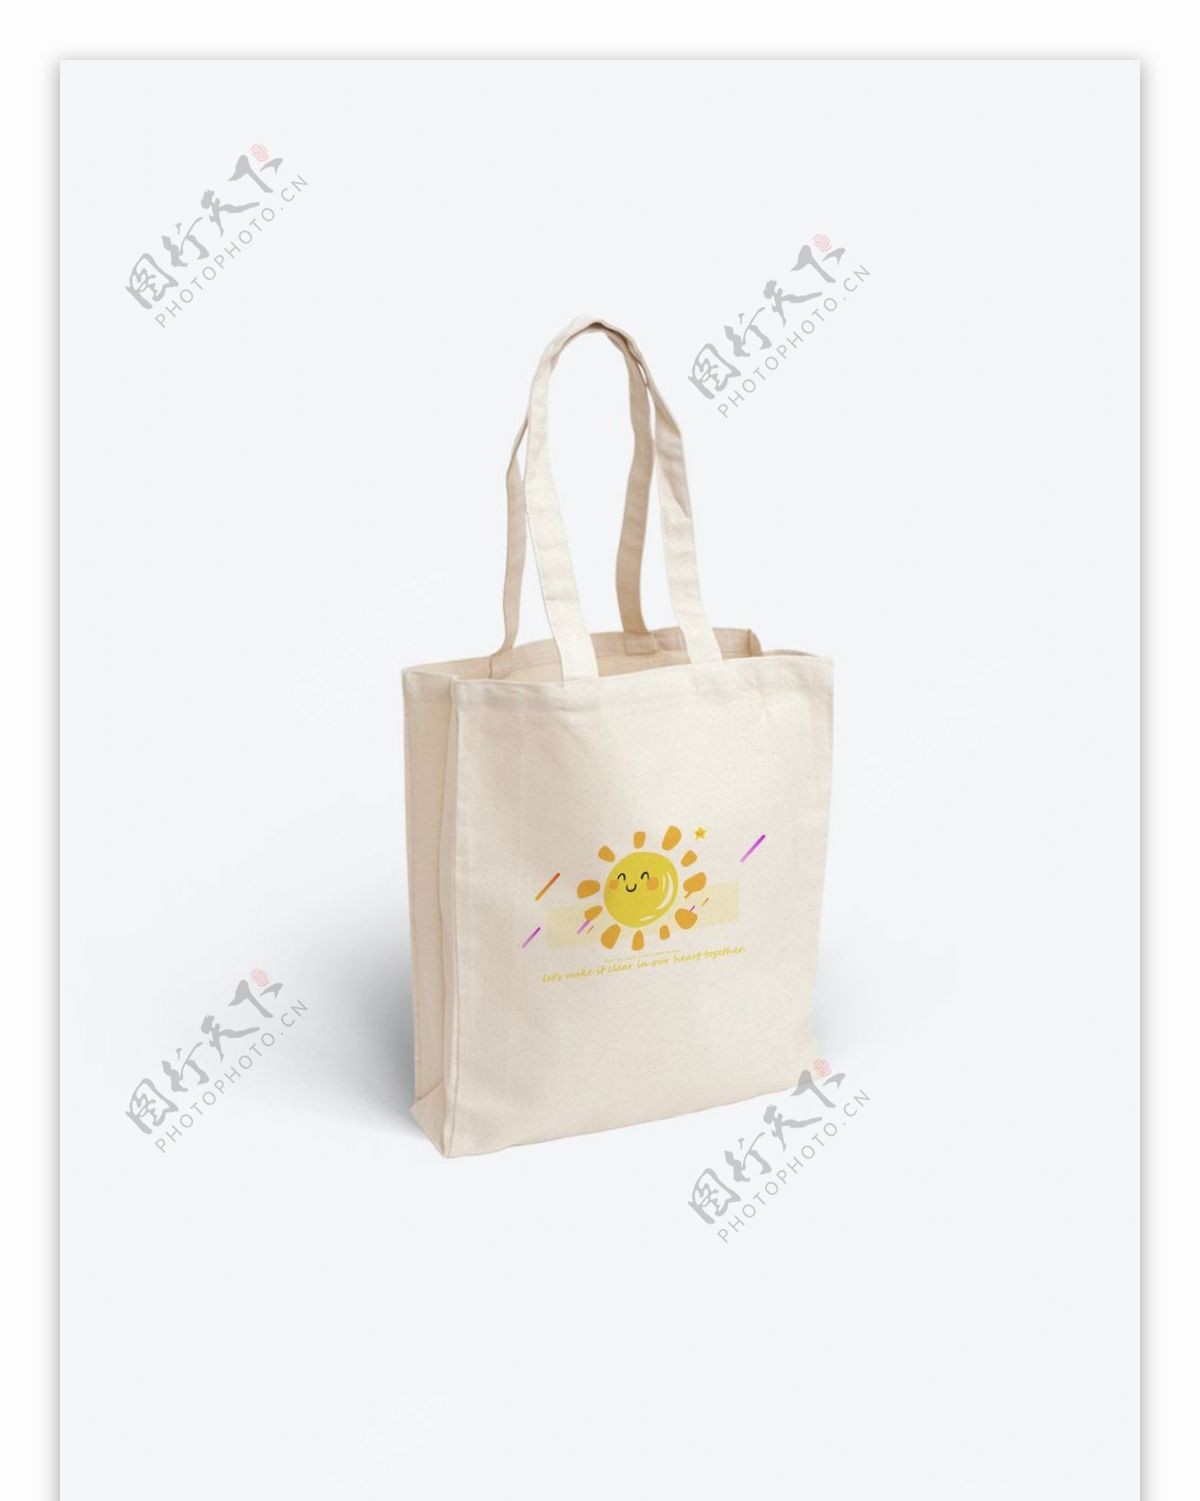 原创可爱小太阳帆布袋包装设计